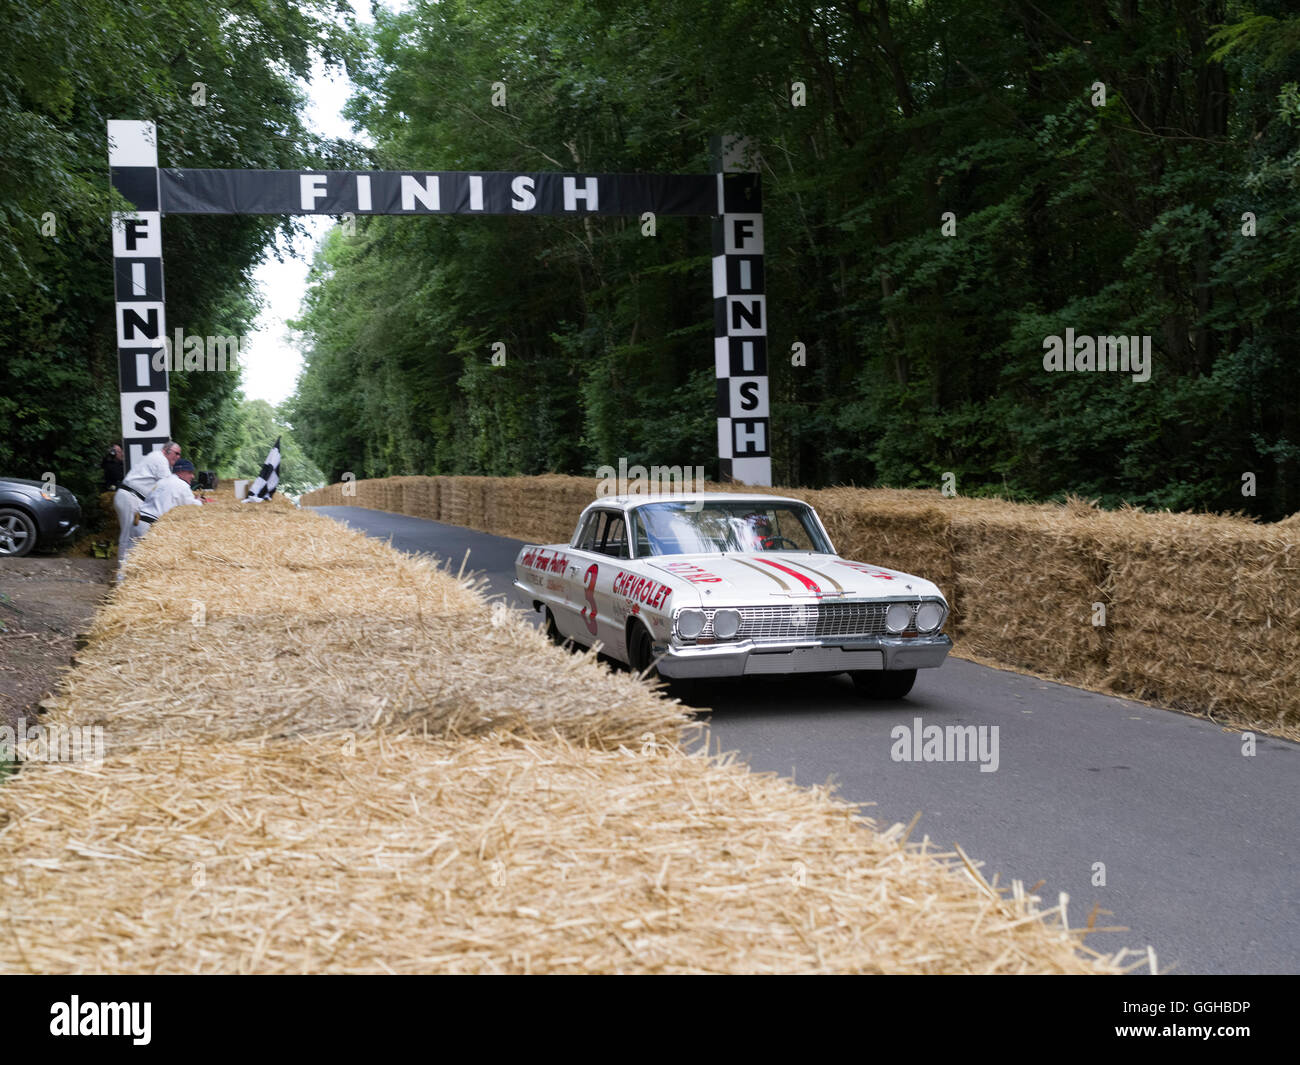 1963 Chefrolet Impala alla linea di finitura, Goodwood Festival della velocità 2014, racing, auto racing, classic car, Chichester, Susse Foto Stock